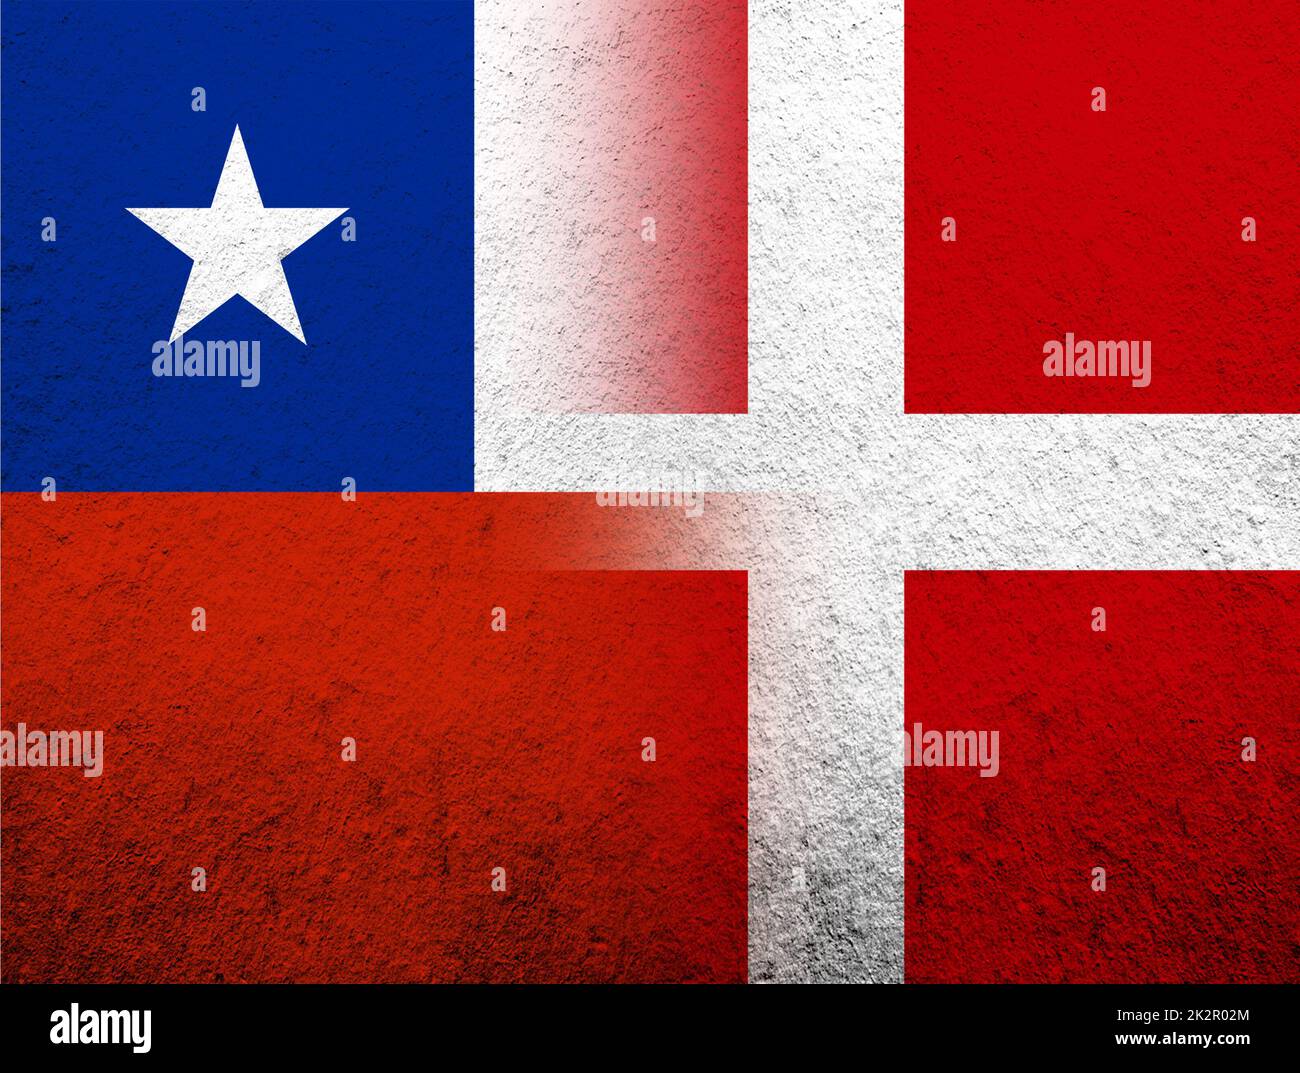 Das Königreich Dänemark Nationalflagge mit der Republik Chile Nationalflagge. Grunge Hintergrund Stockfoto